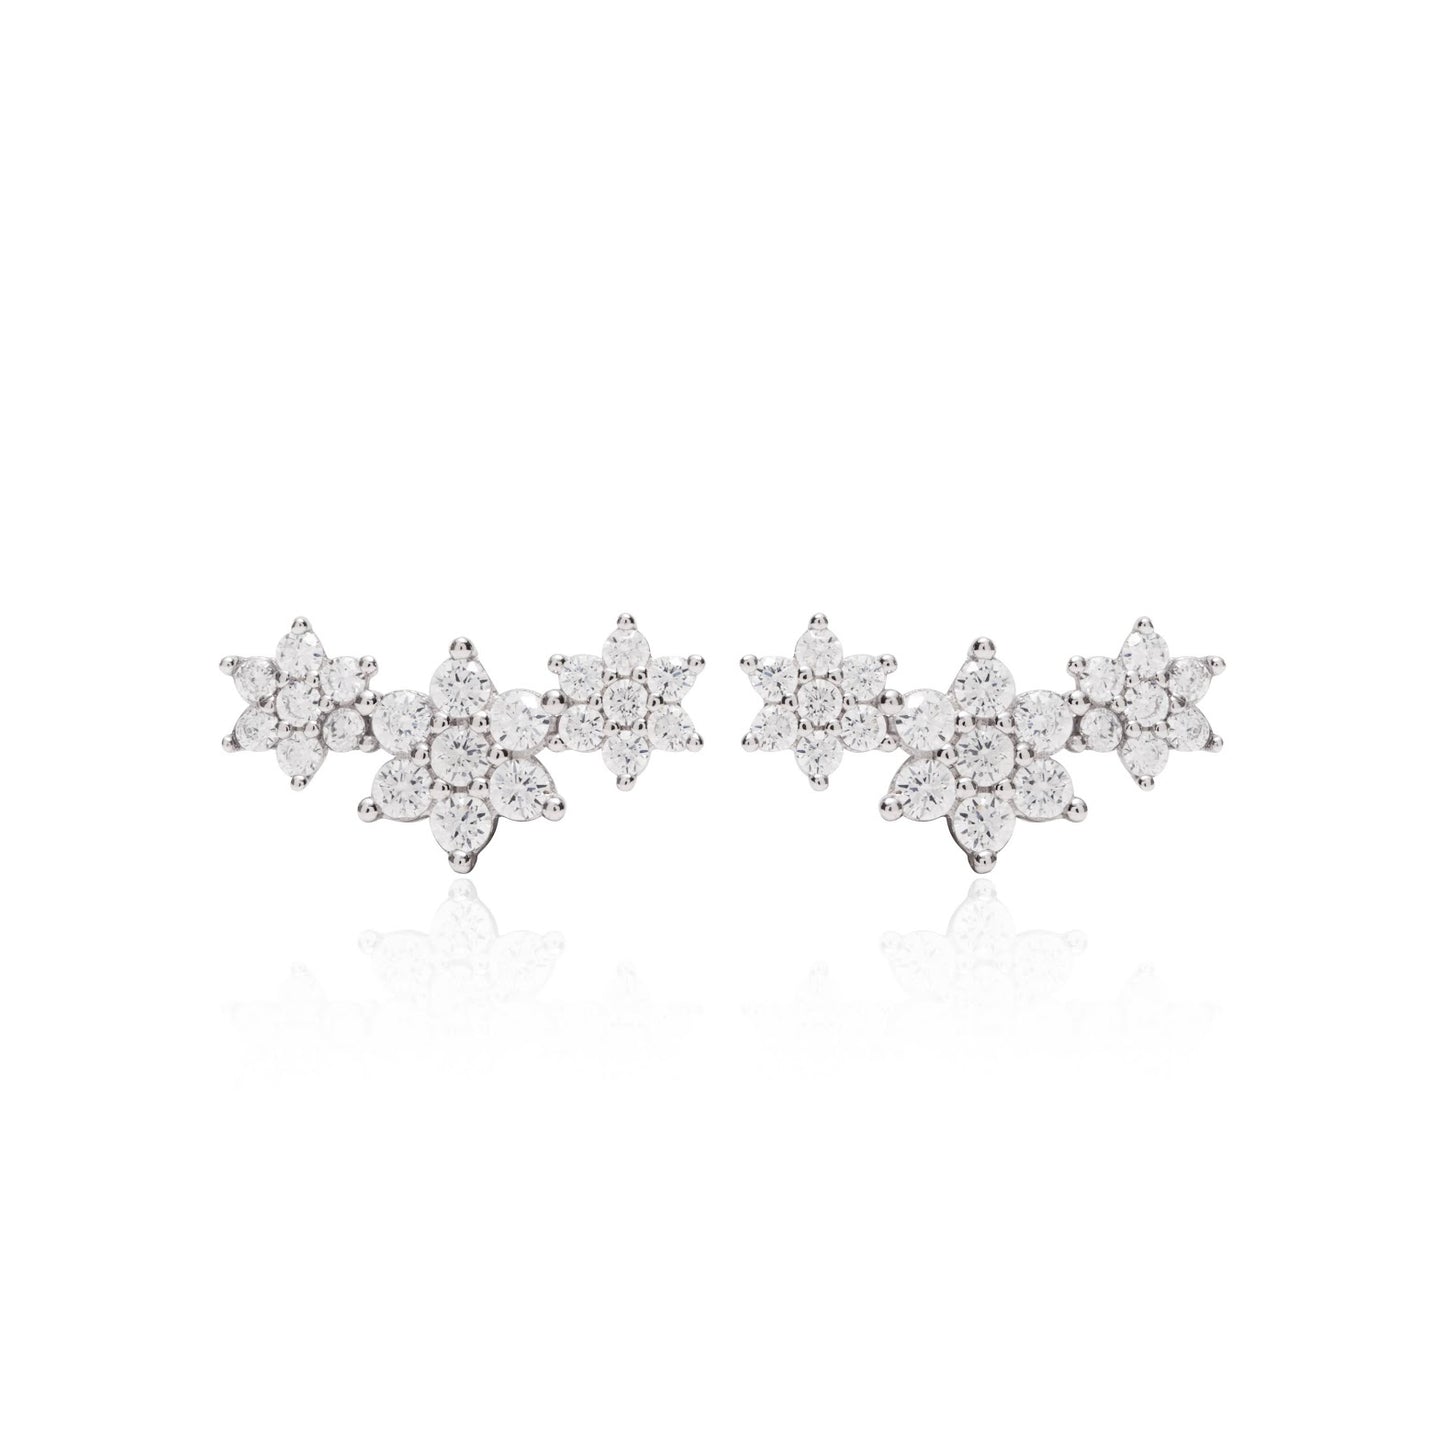 White Zirconia Flowers Ear Cuff Earrings 925 Sterling Silver